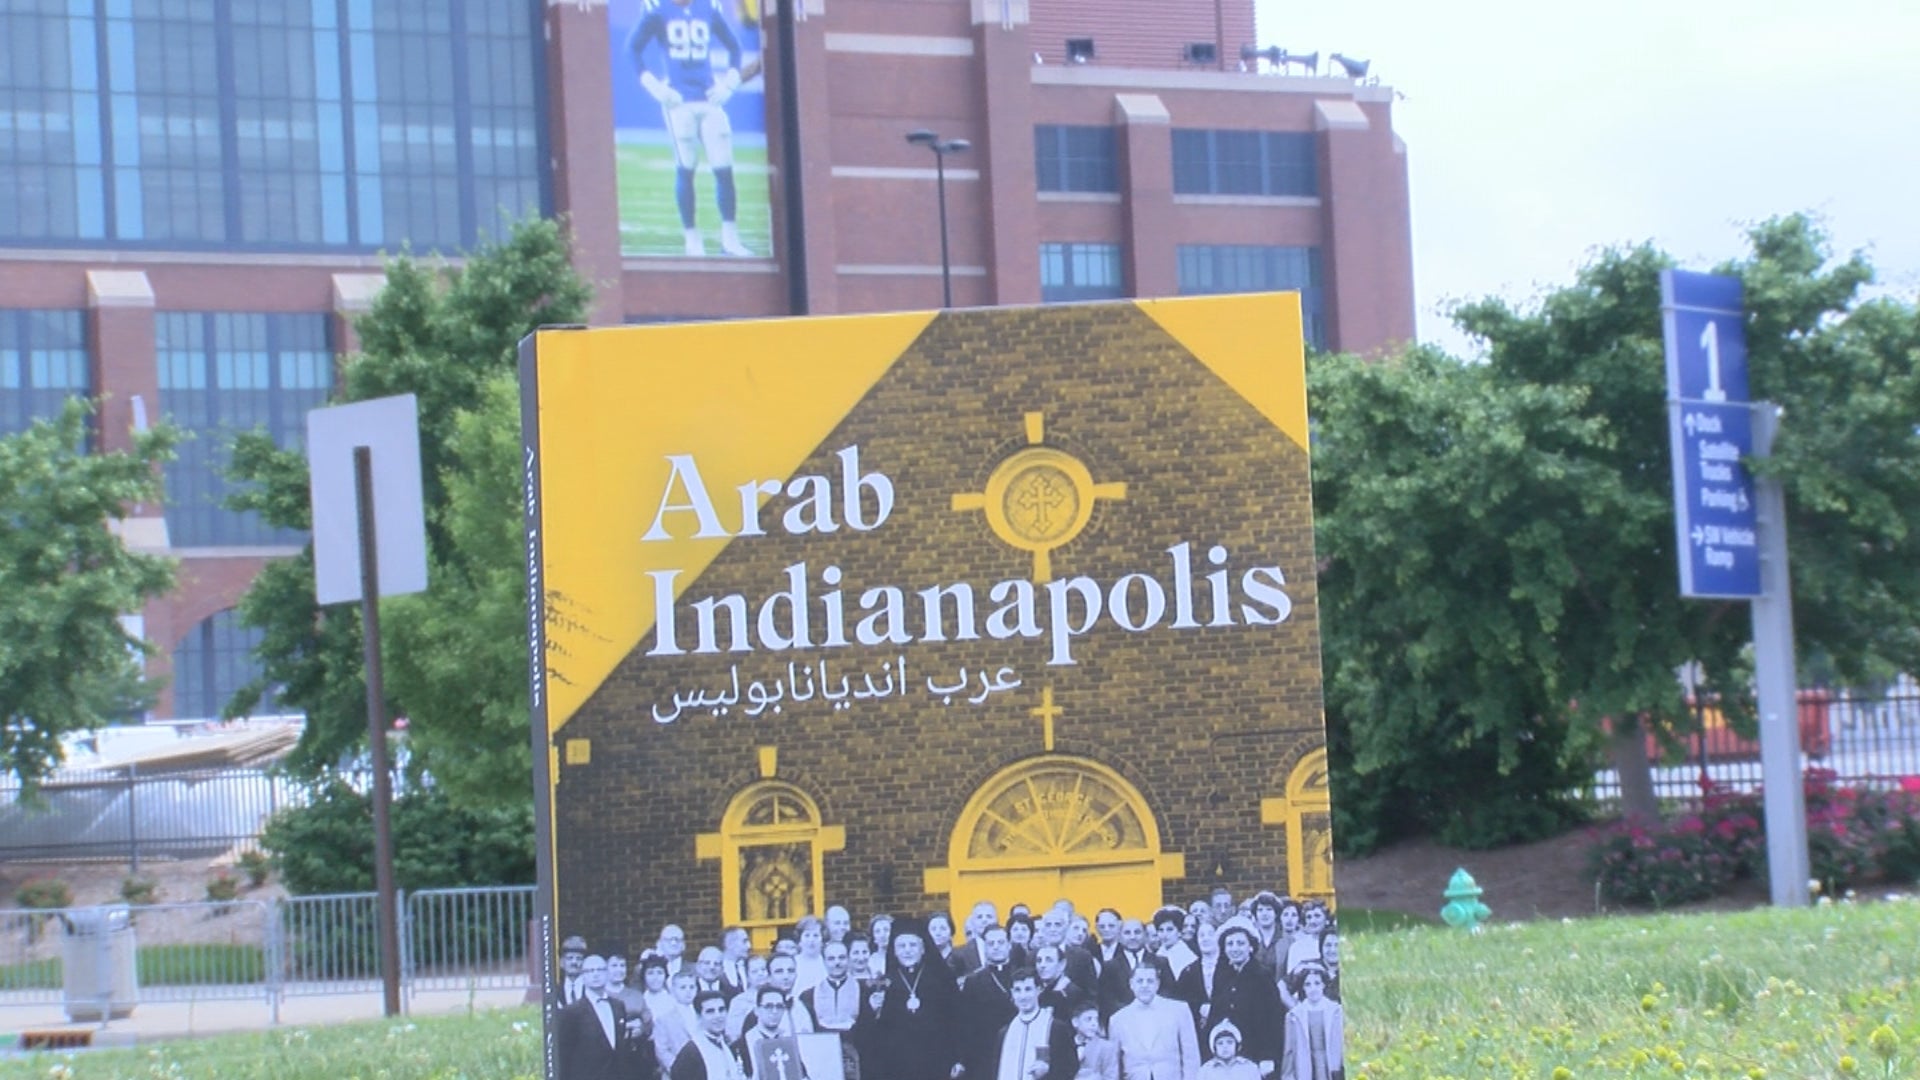 كتاب جديد عن التاريخ العربي في انديانابوليس وثائقي – WISH-TV |  انديانابوليس نيوز |  إنديانا الطقس